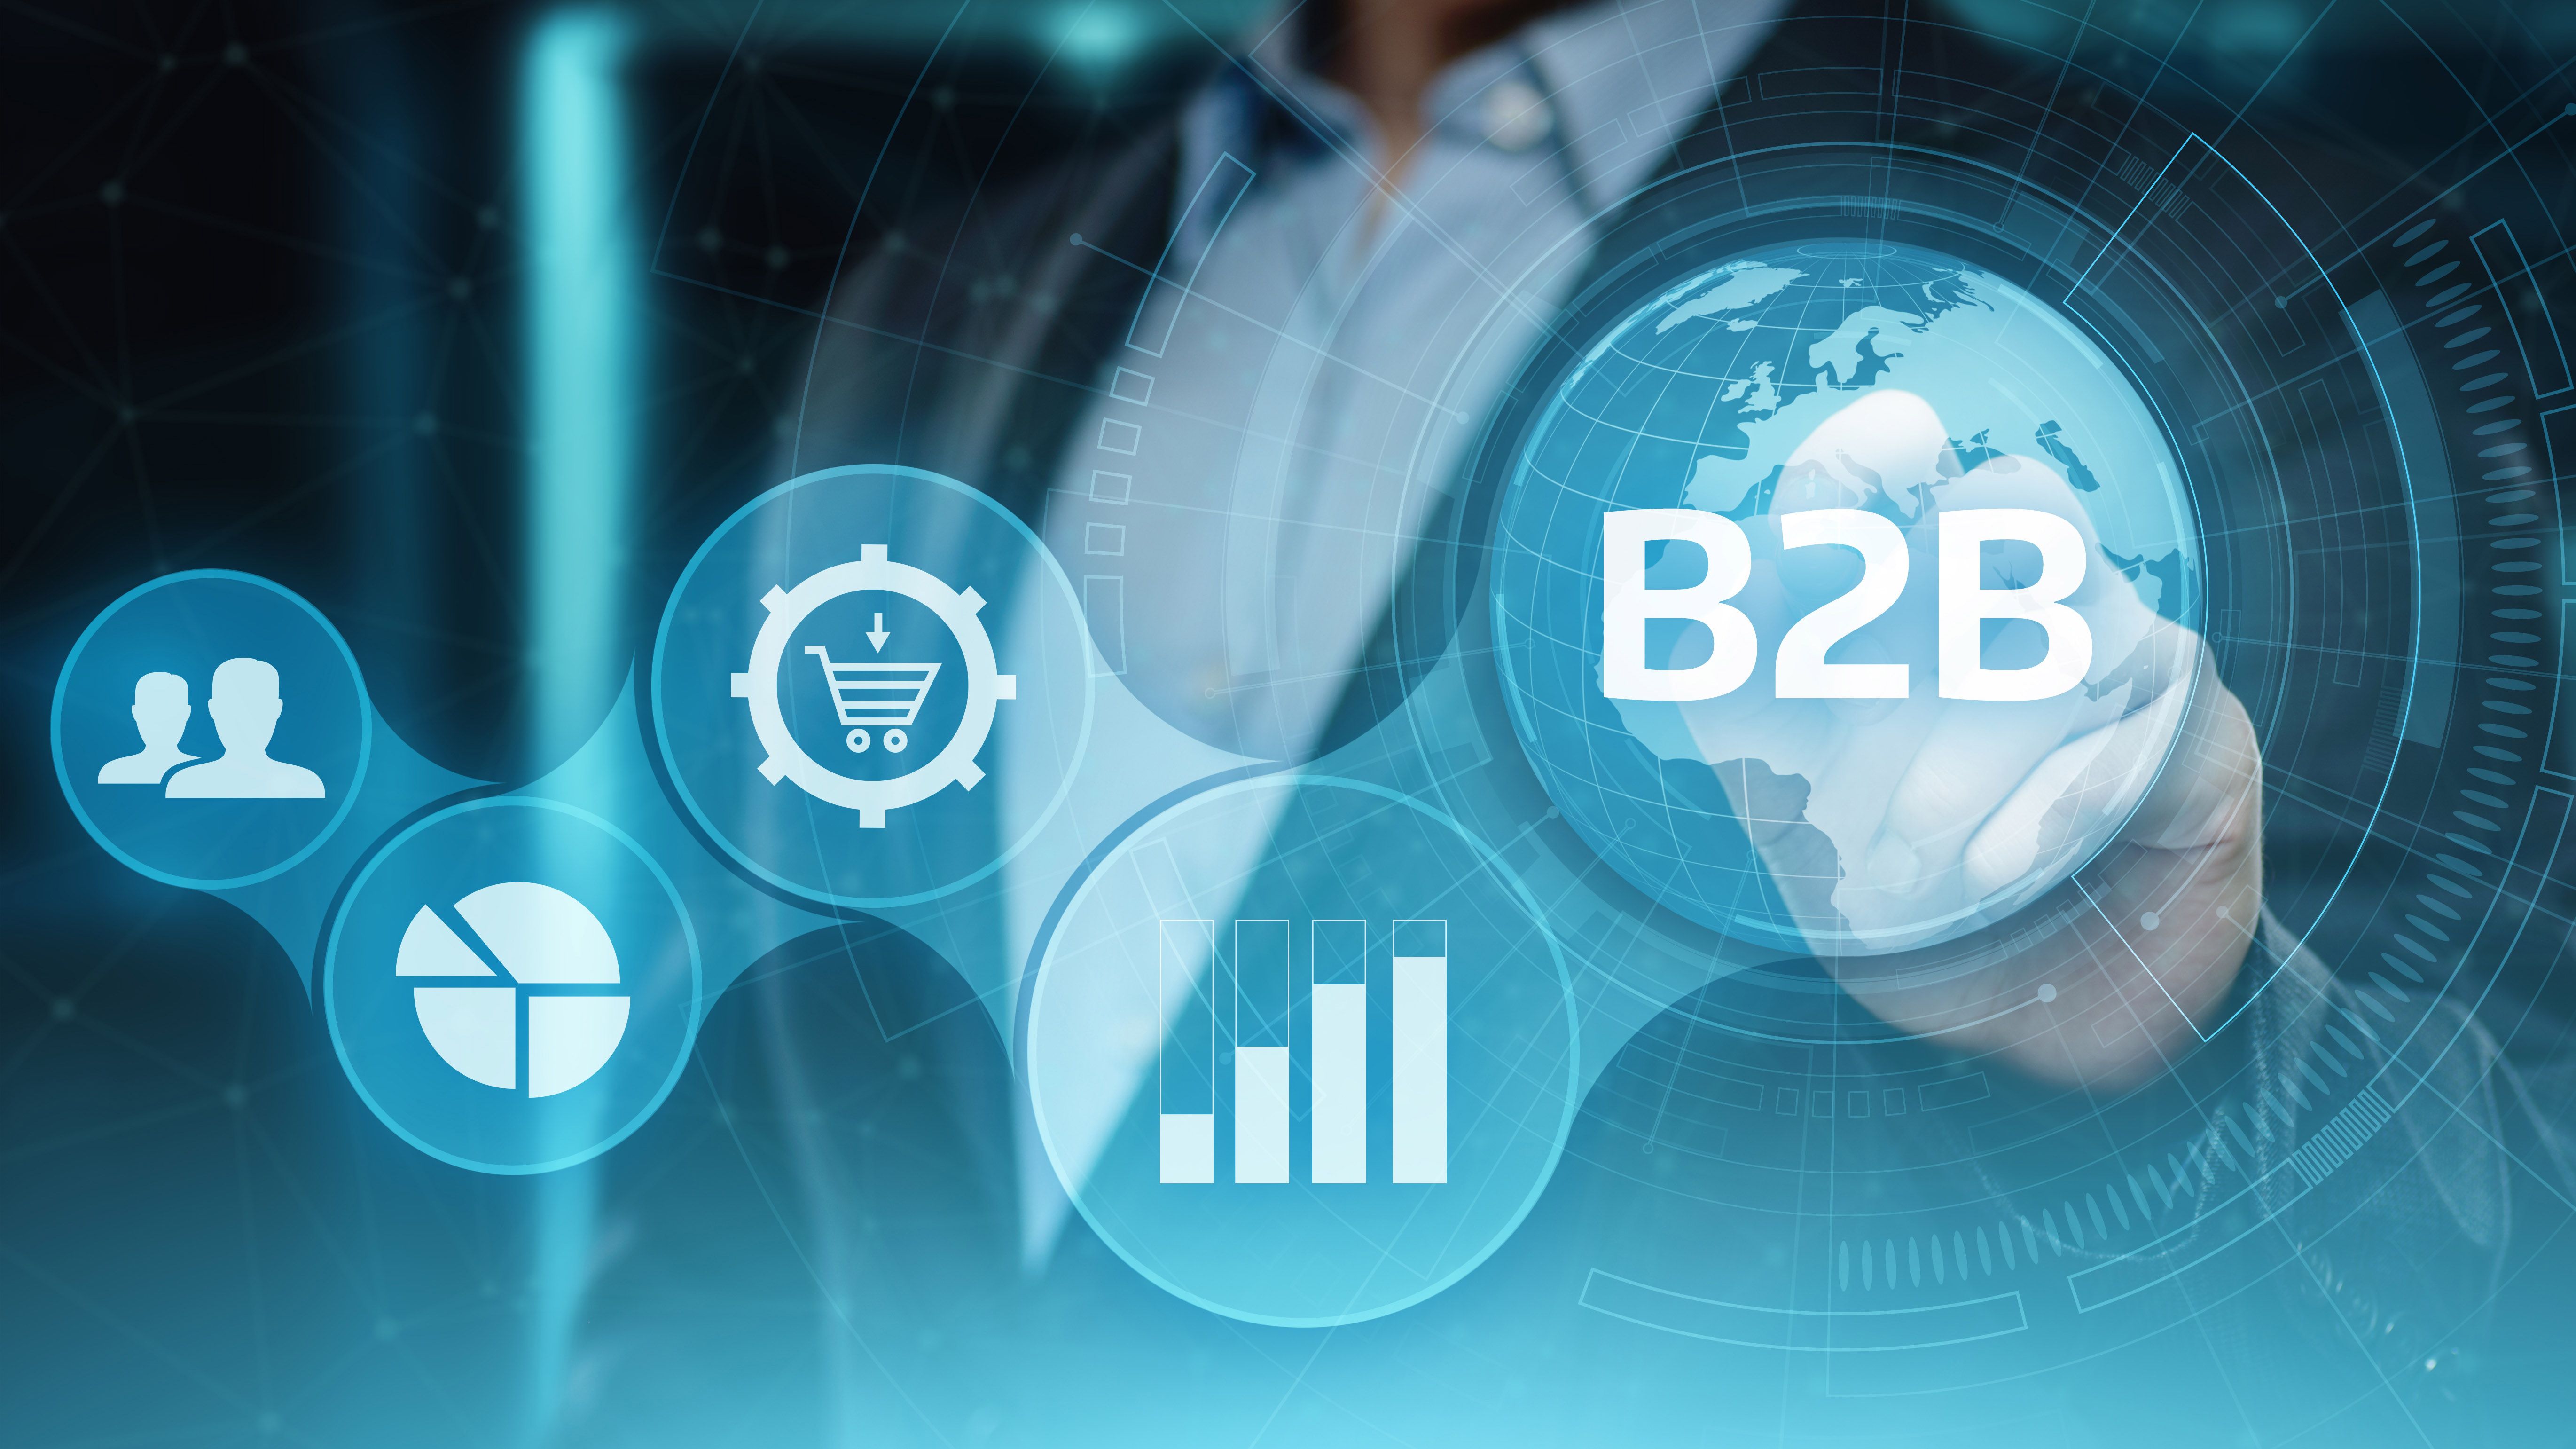 Kesp lidera en ventas de b2b